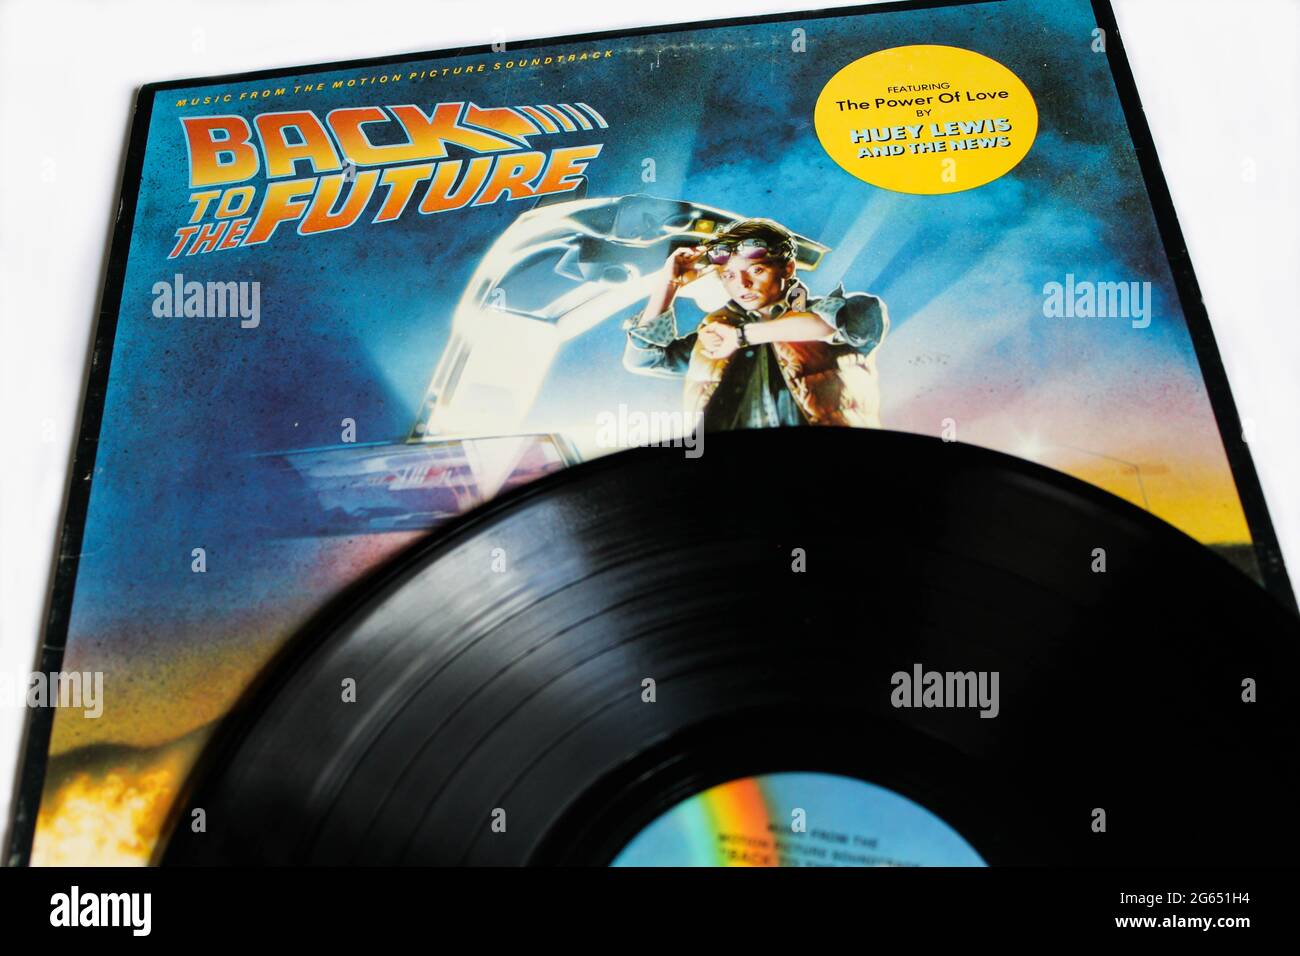 Zurück in die Zukunft Film Motion Picture Soundtrack LP Vinyl Album Cover Stockfoto